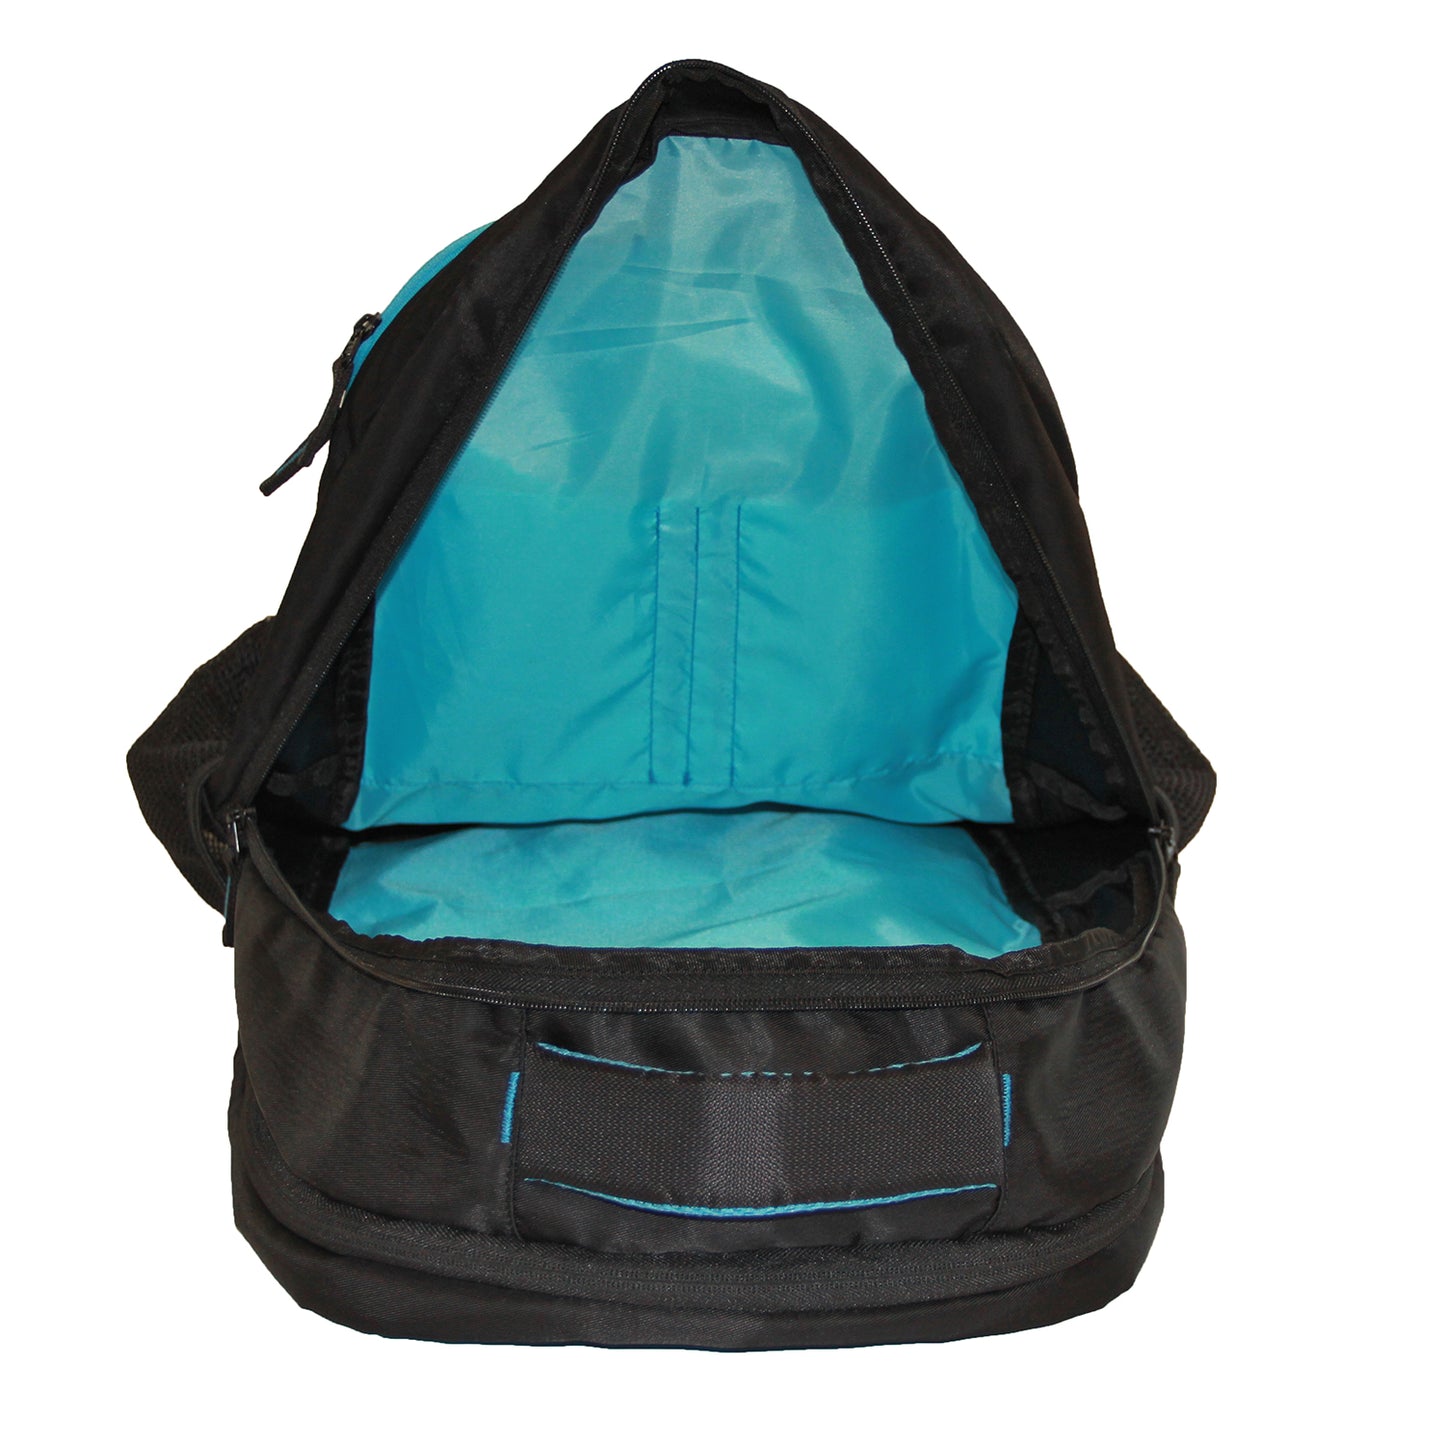 Black Spacious School Backpack